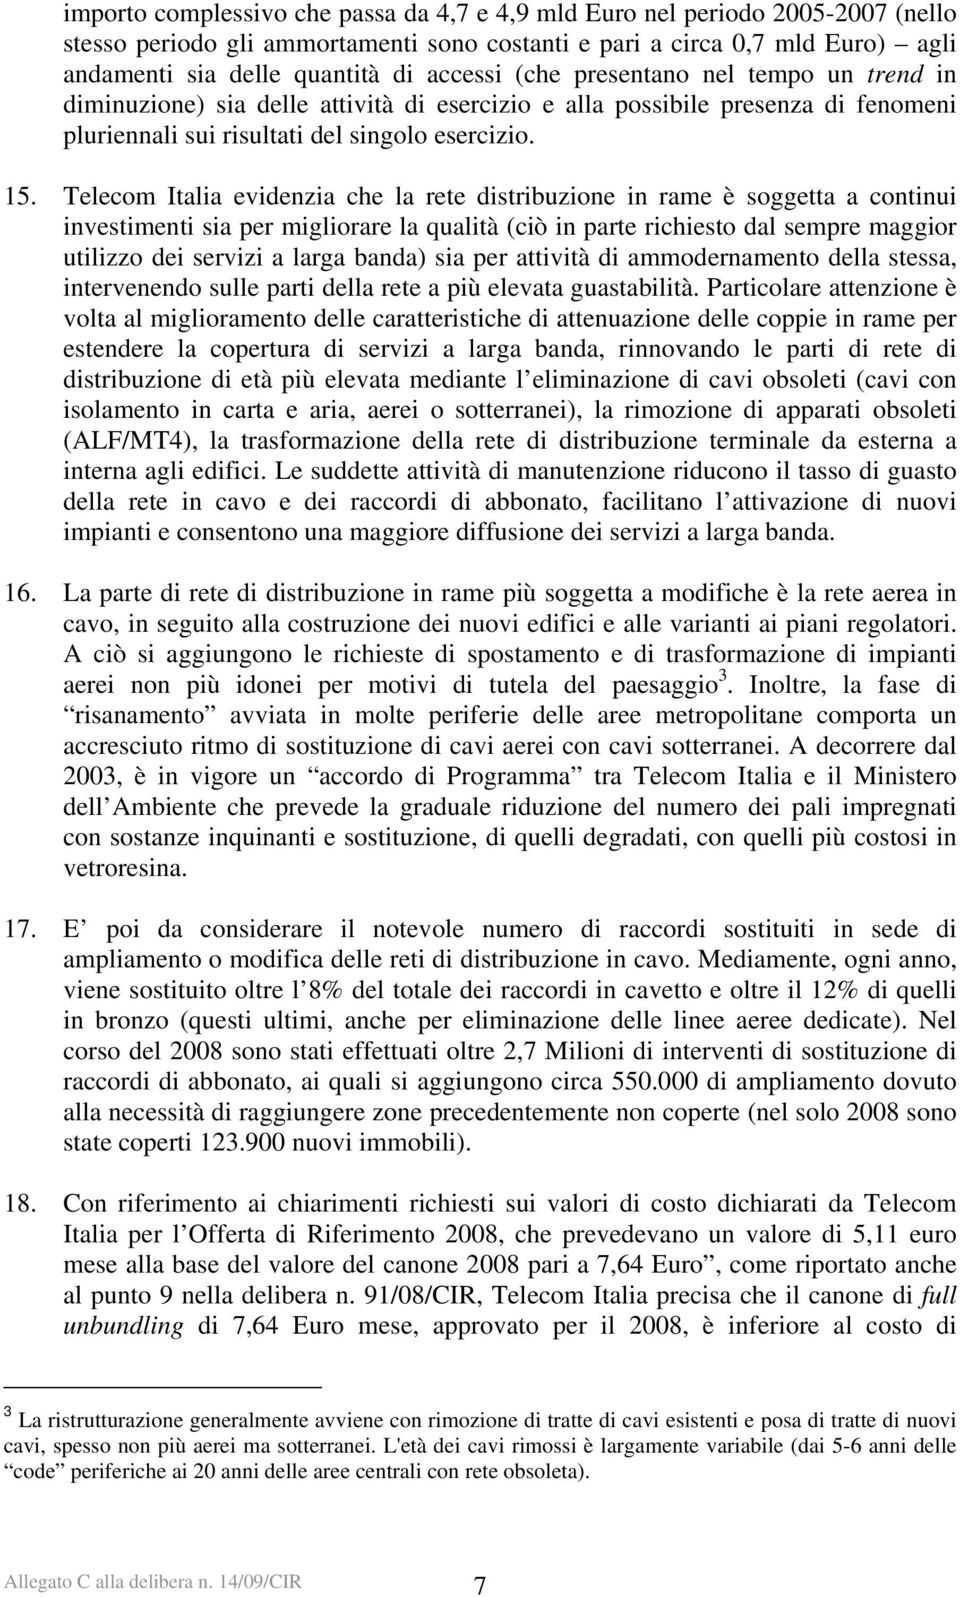 Telecom Italia evidenzia che la rete distribuzione in rame è soggetta a continui investimenti sia per migliorare la qualità (ciò in parte richiesto dal sempre maggior utilizzo dei servizi a larga